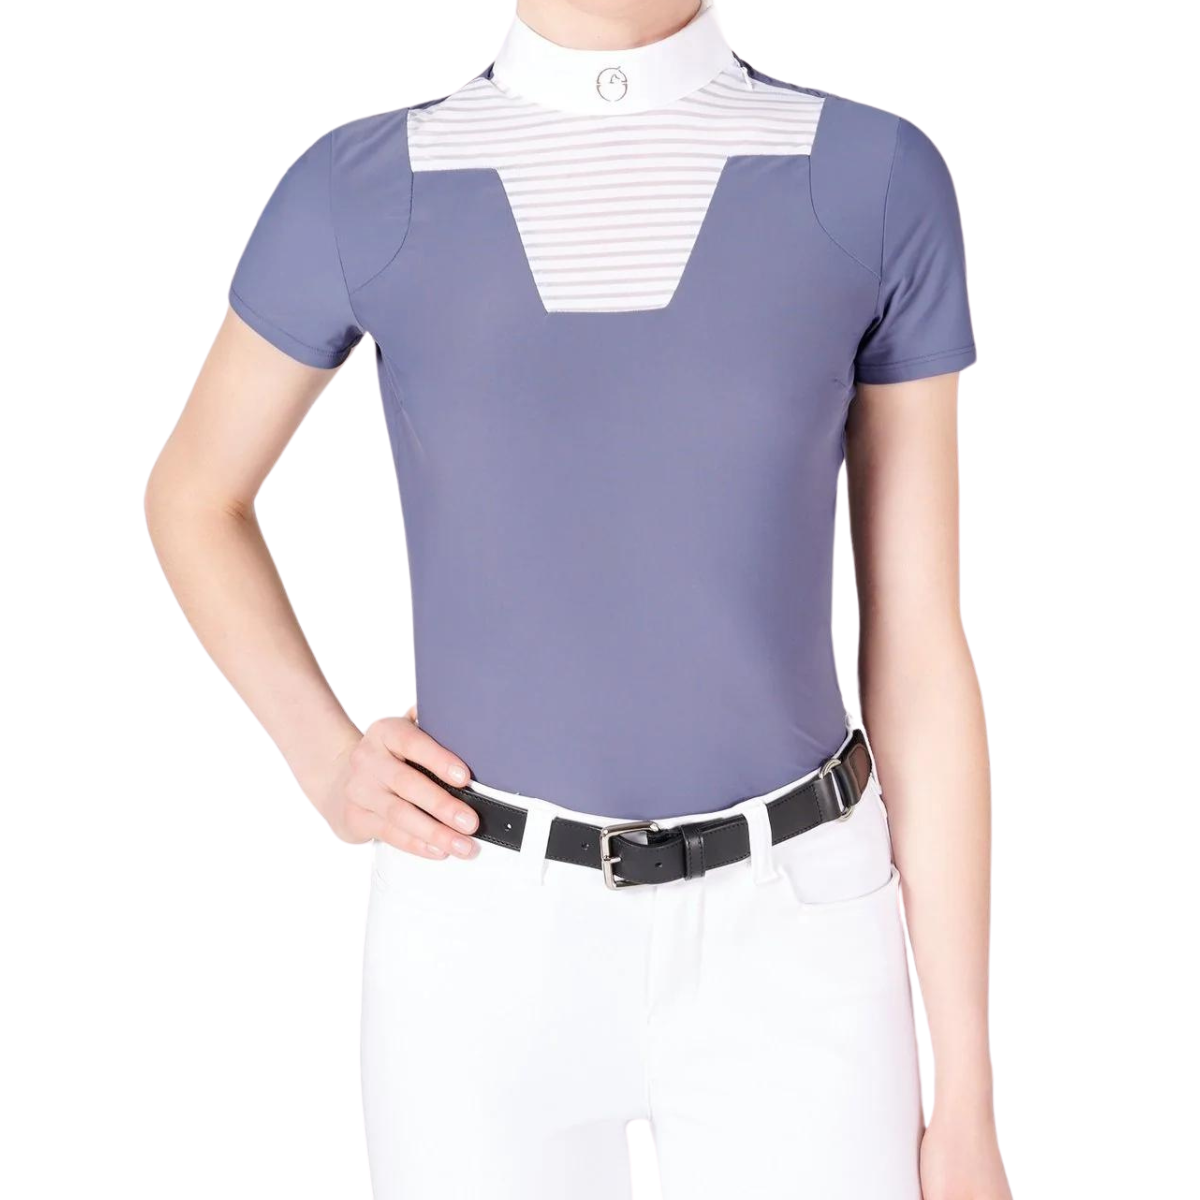 Vestrum Zagabria Show Shirt in Blue/White - Women&#39;s Small